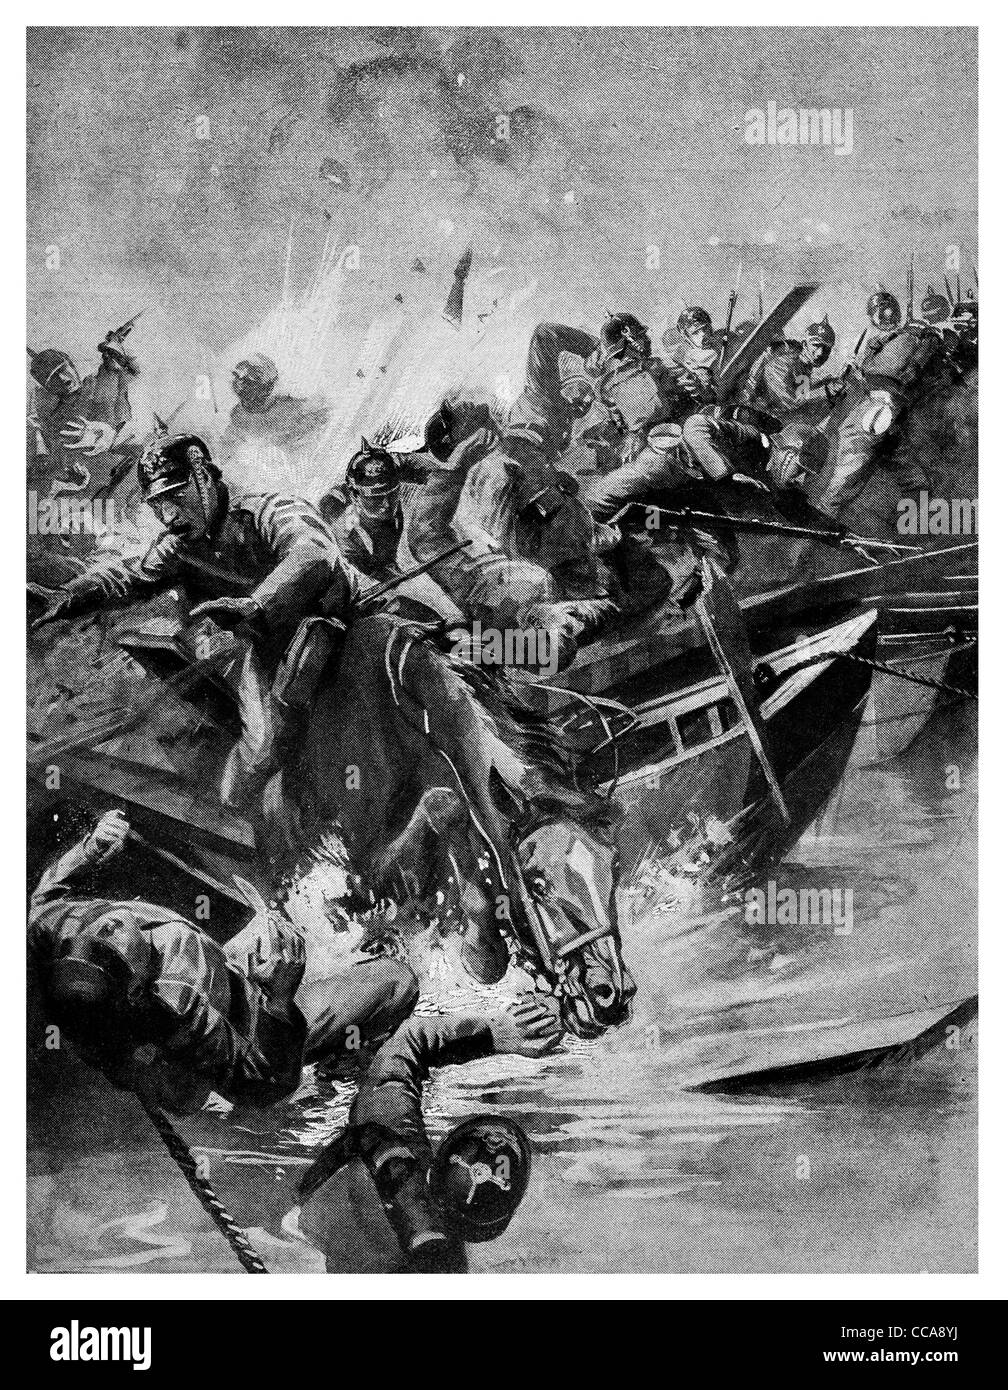 25 septembre 1914 l'armée allemande contre les Russes du Général Paul von Rennenkampf Niemen Cross River 8000 allemands sont morts Banque D'Images